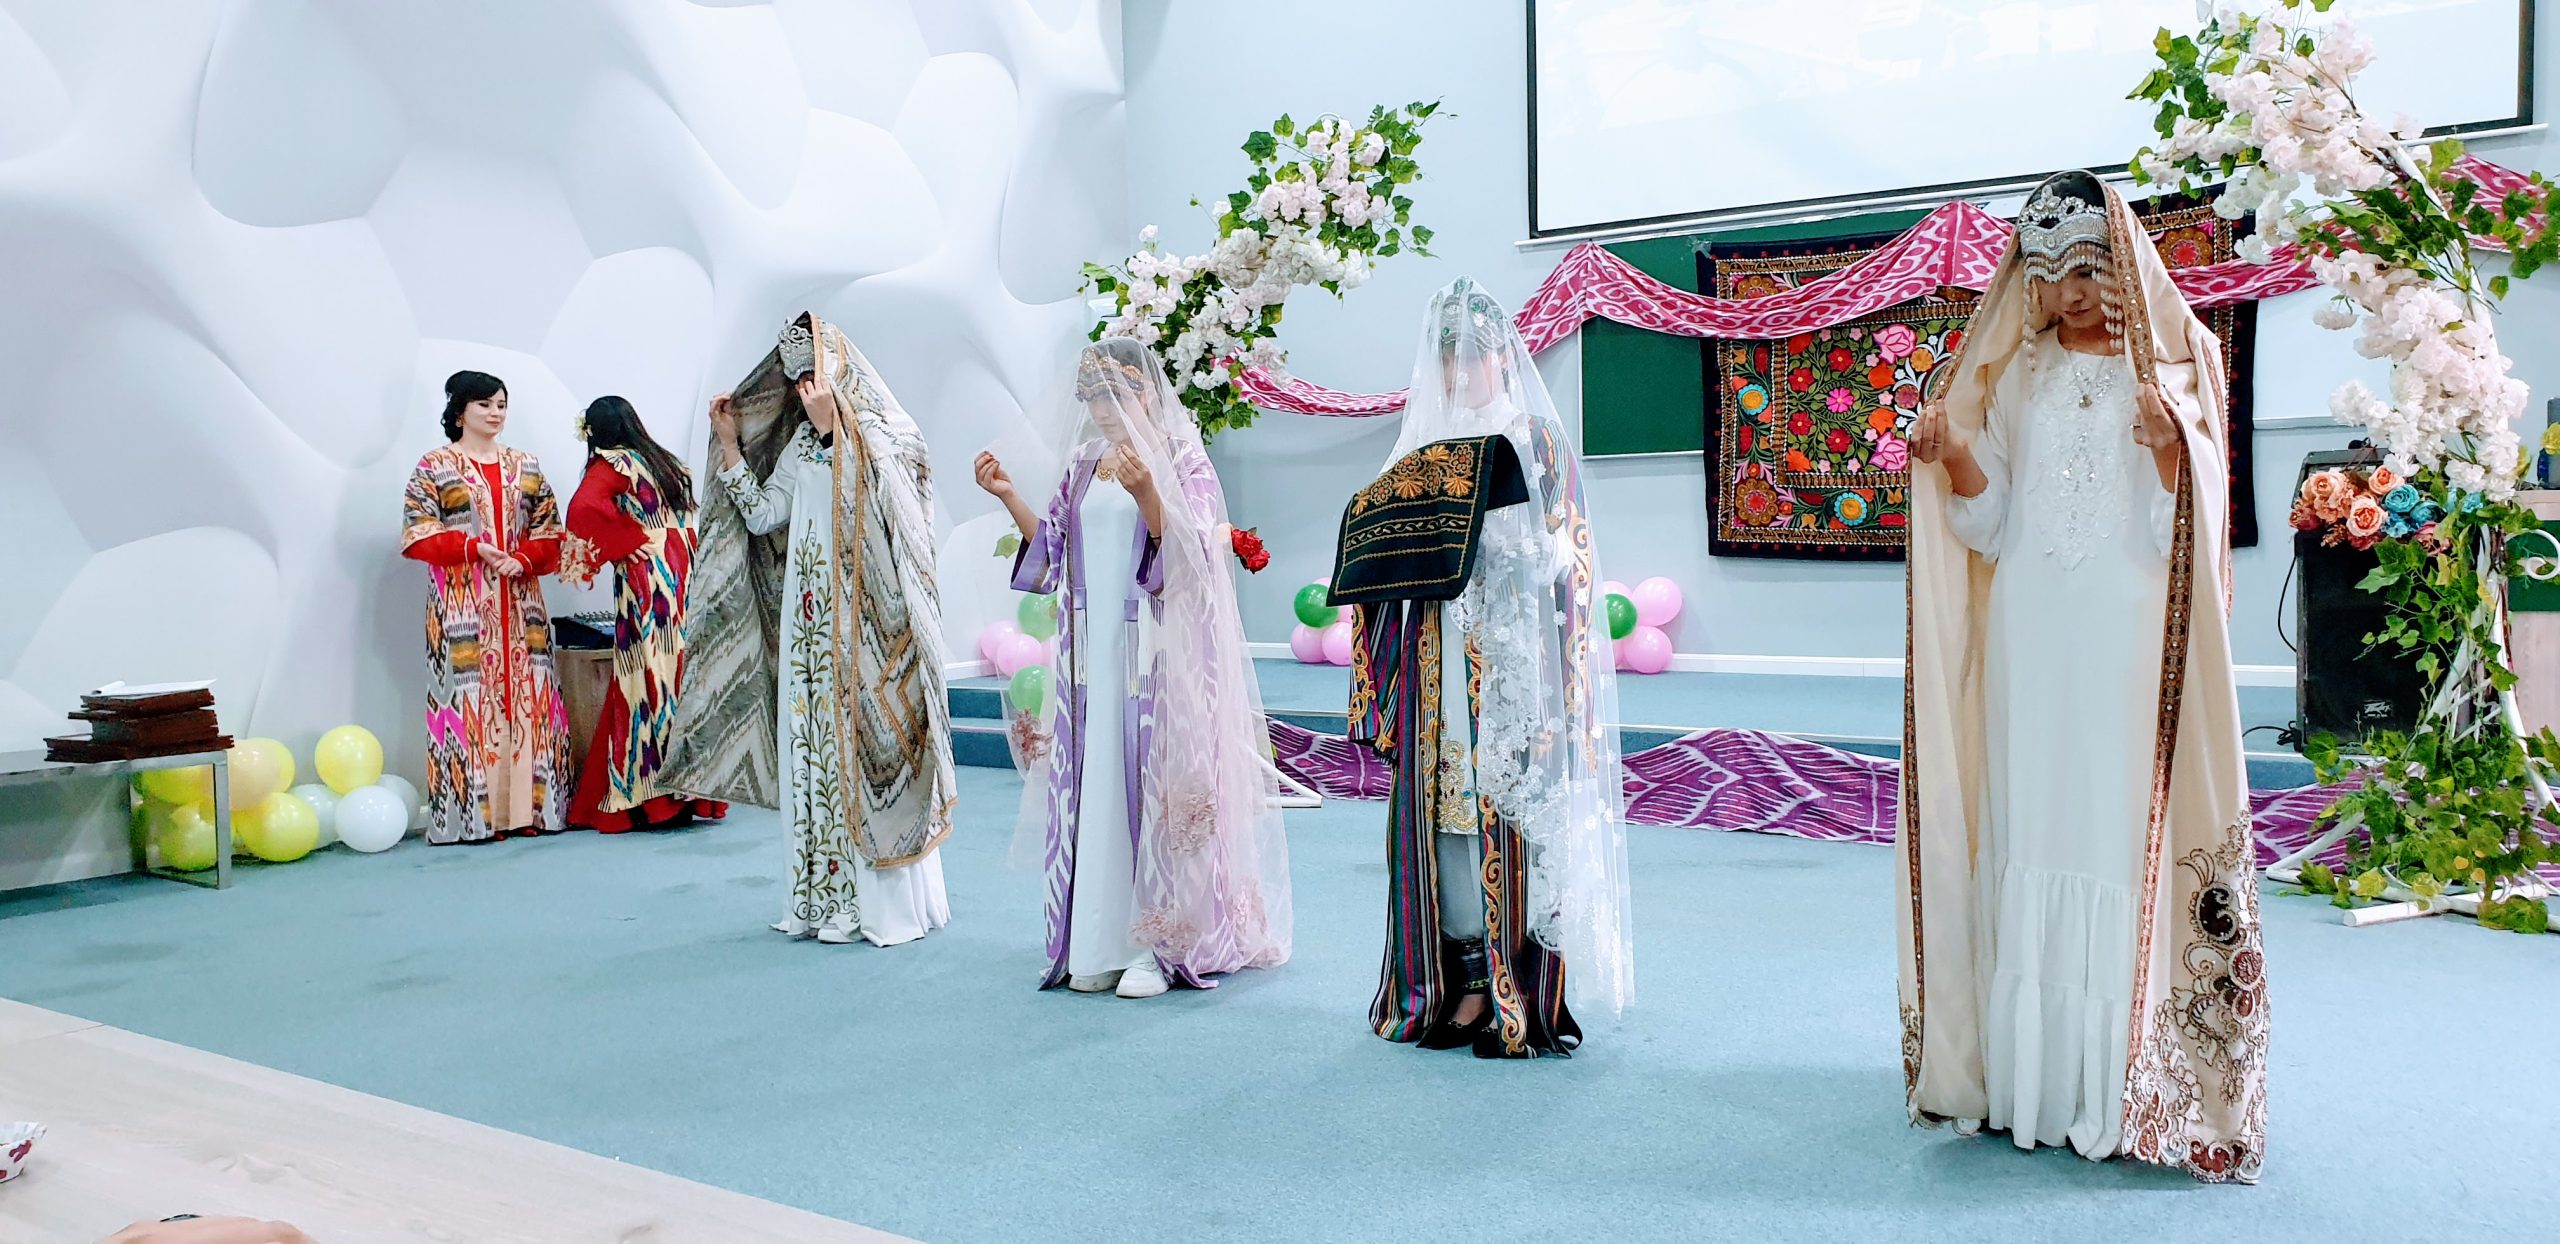 Uzbekistan arki ja juhla